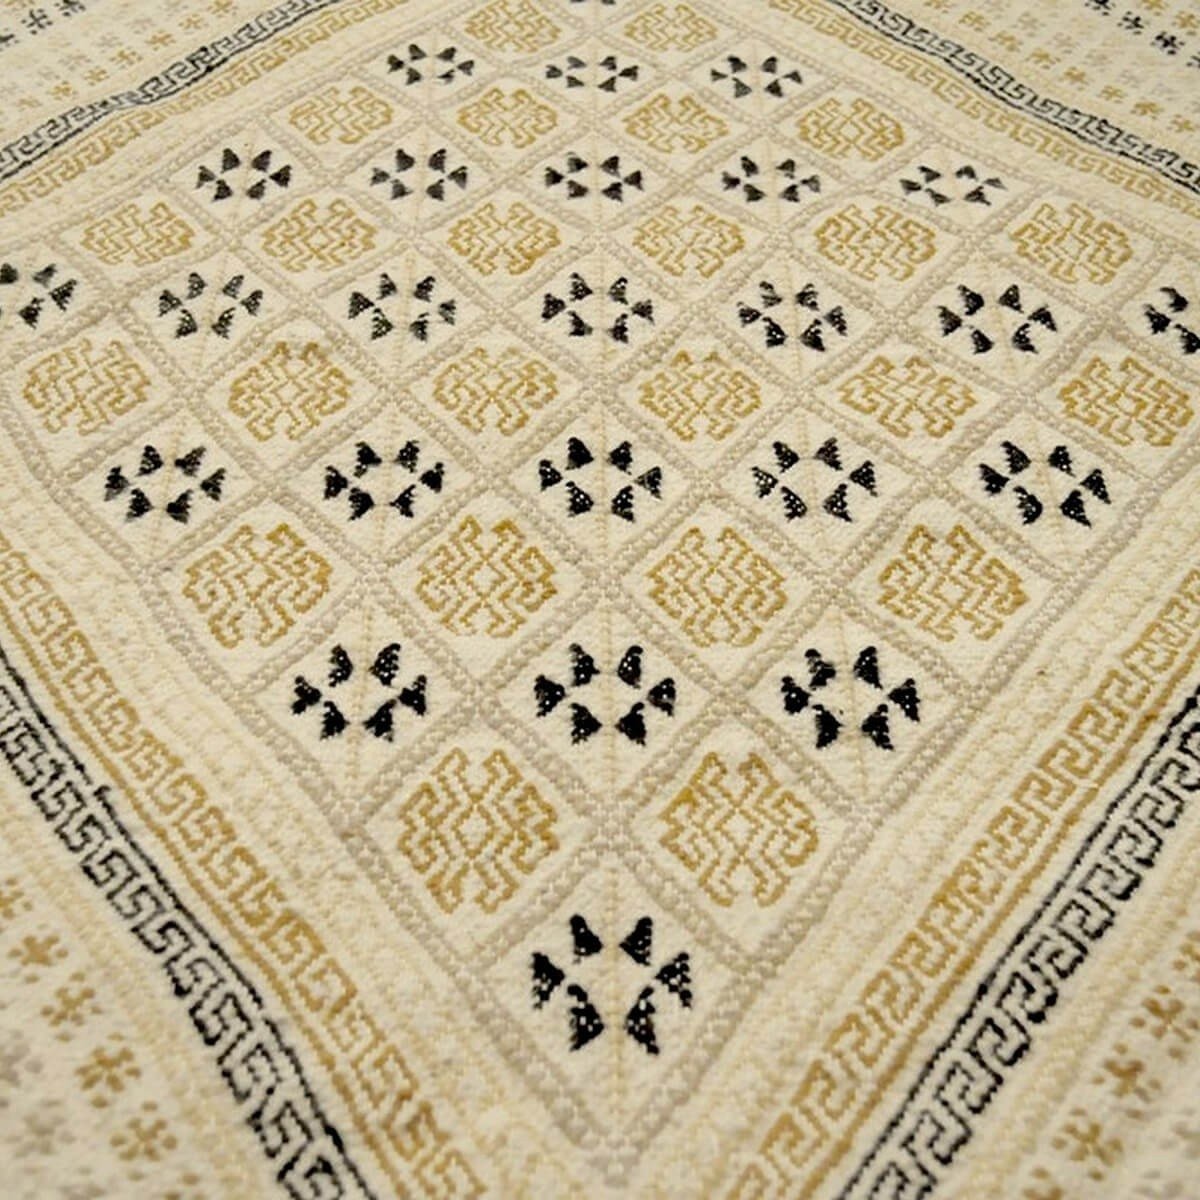 Berber tapijt Tapijt Margoum Sefnou 115x190 Beige (Handgeweven, Wol, Tunesië) Tunesisch Margoum Tapijt uit de stad Kairouan. Rec